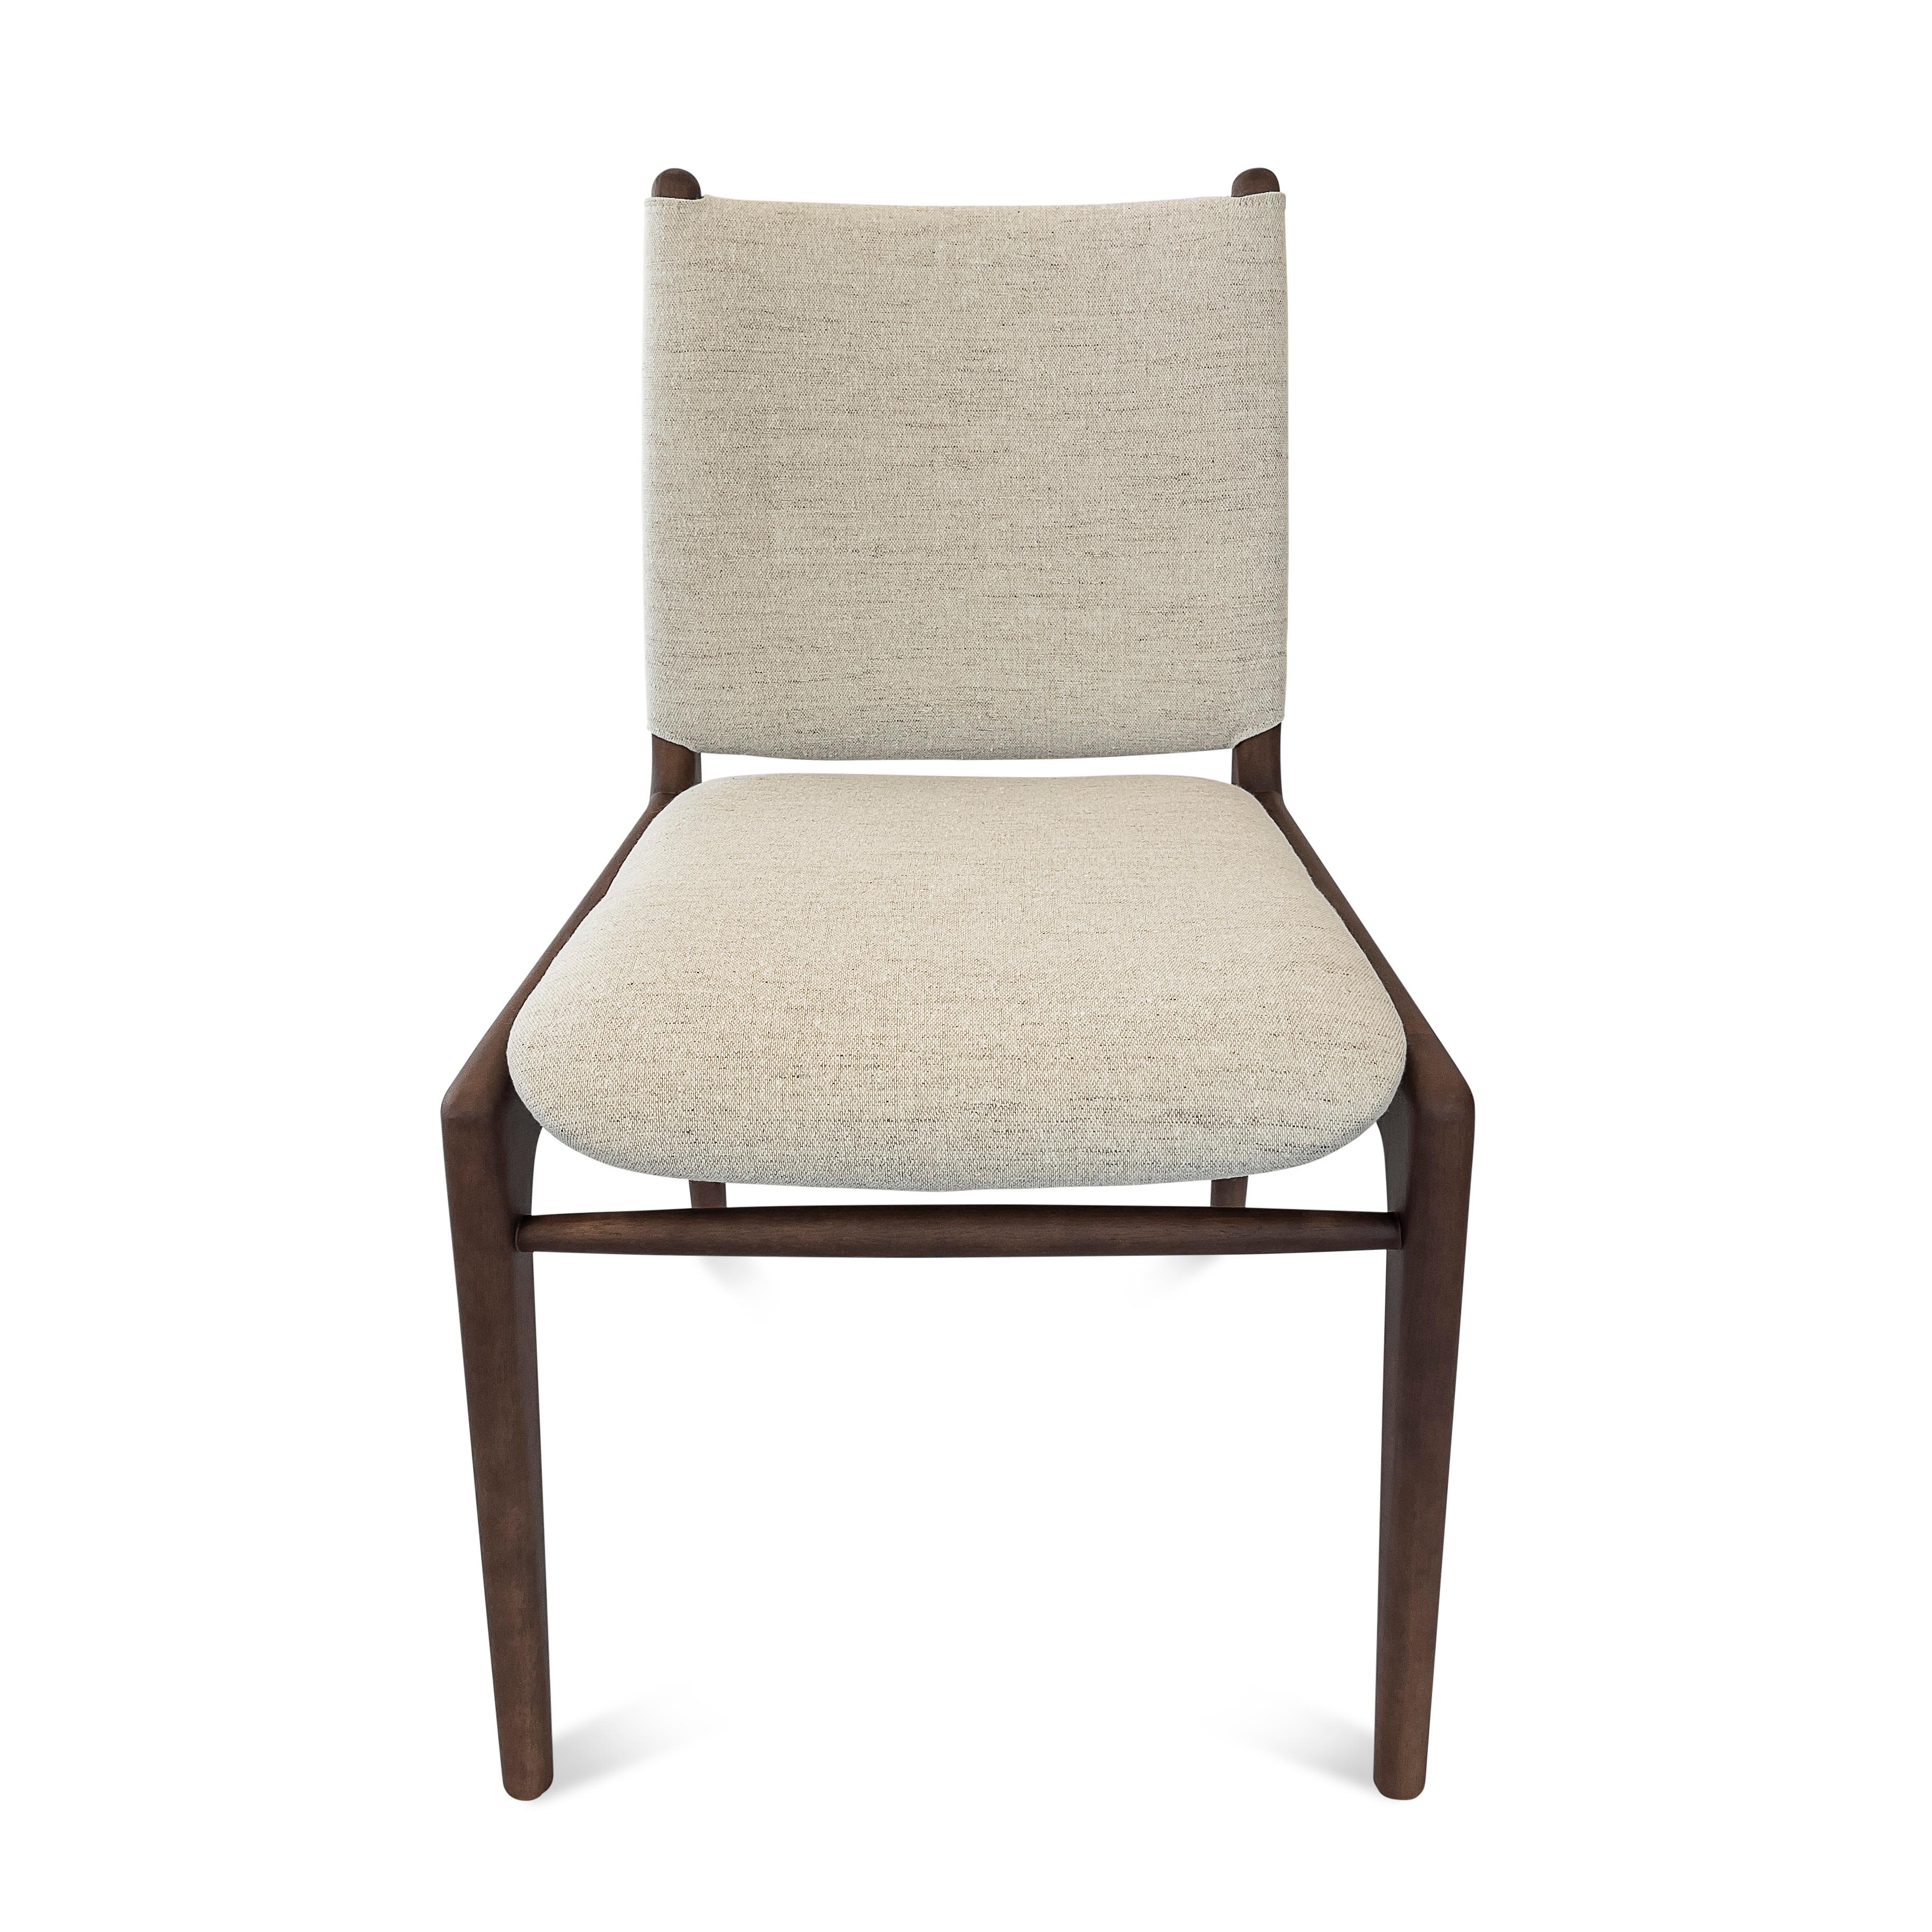 La chaise Cappio met en valeur notre magnifique finition en bois de noyer combinée à un superbe tissu beige. Cette chaise présente un design unique de boucles sur le dos de l'assise. Notre équipe chez Uultis a conçu ce design simple mais élégant qui